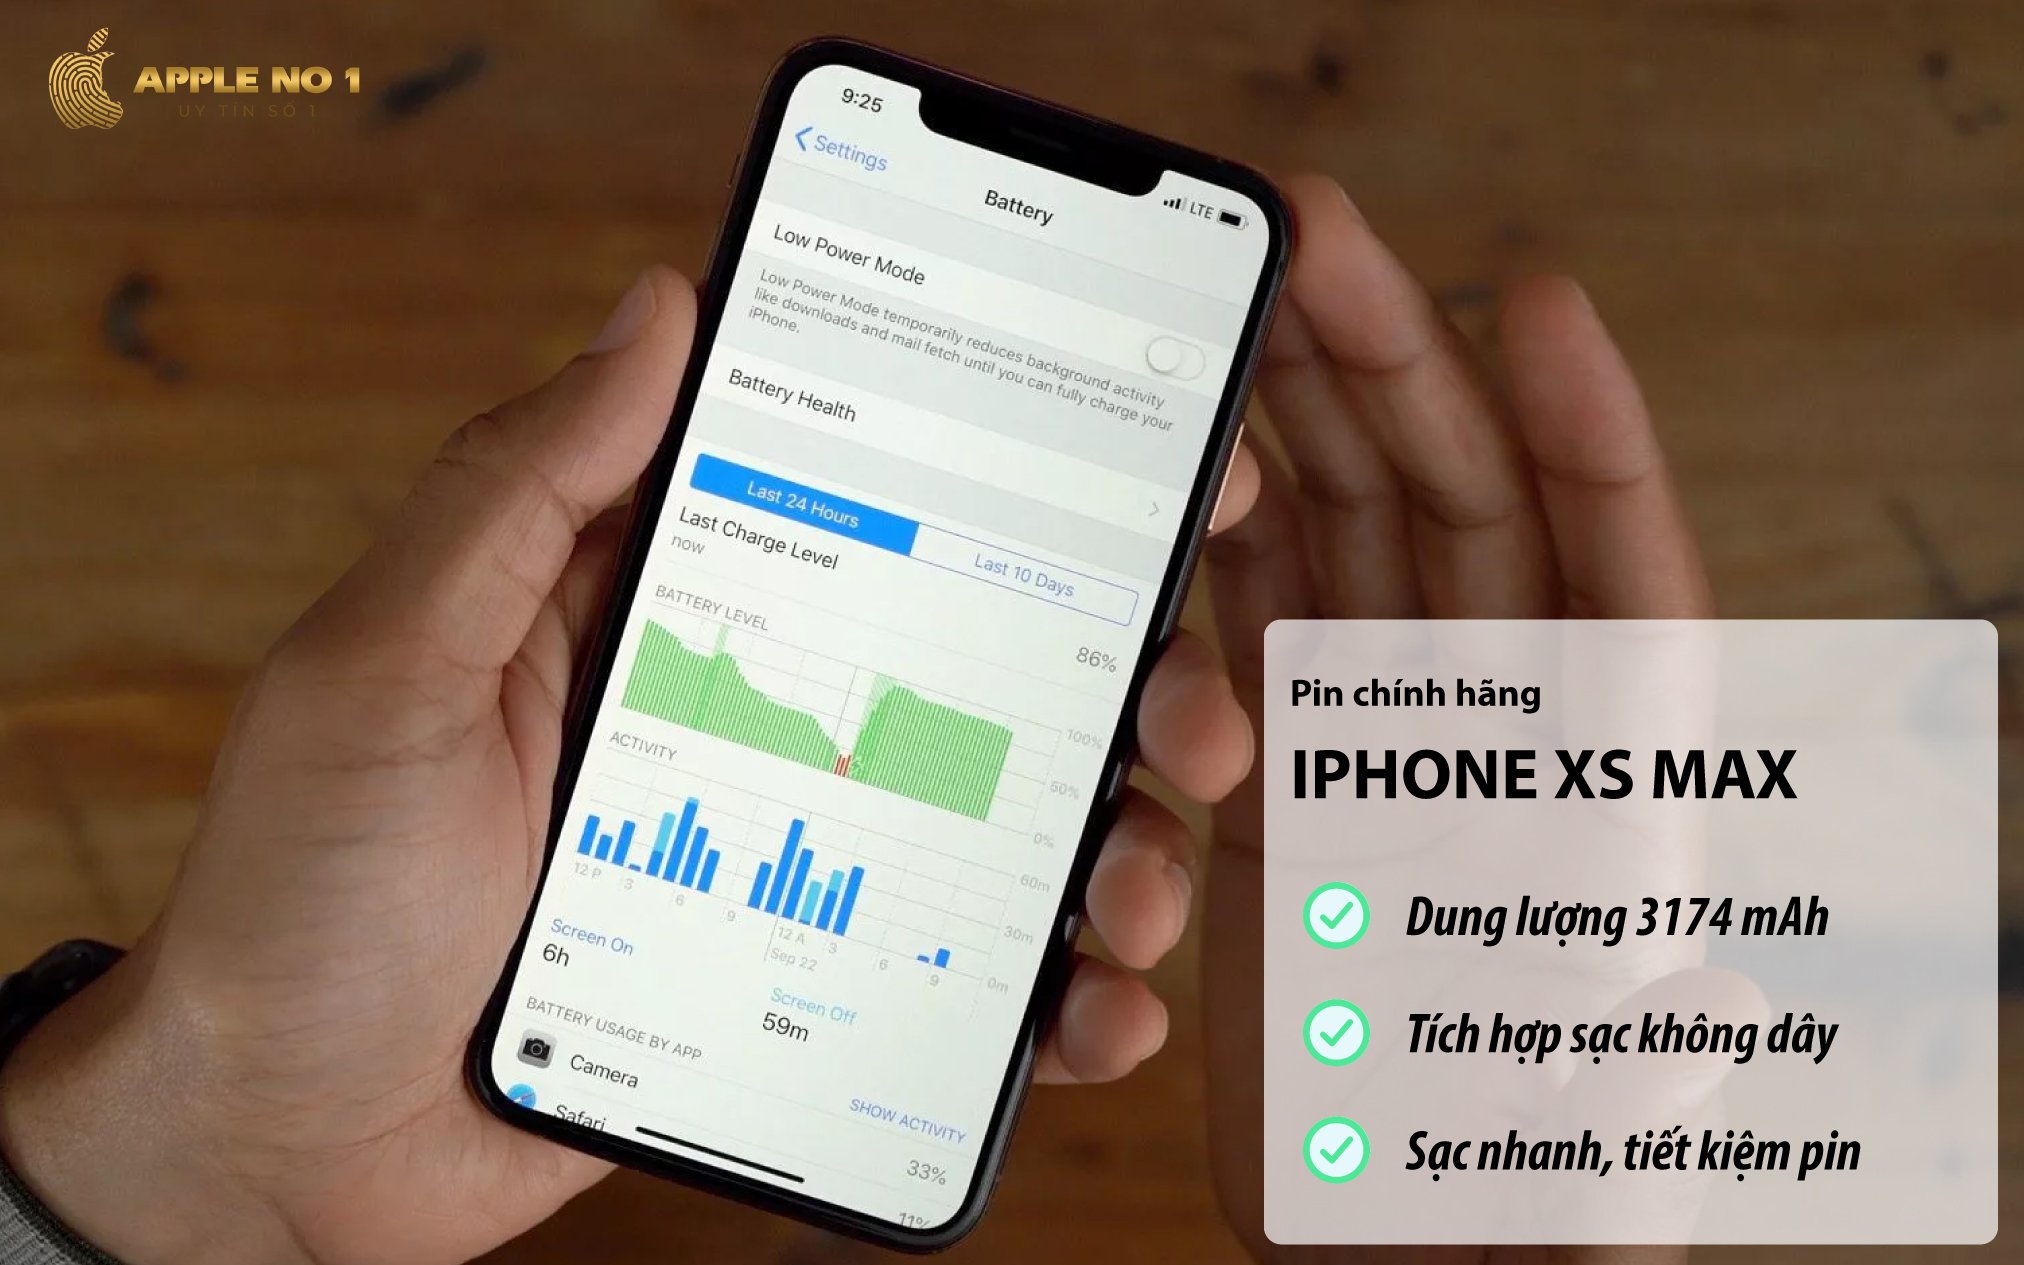 iPhone Xs Max sở hữu dung lượng pin 3174 mAh hỗ trợ sạc nhanh, sạc không dây